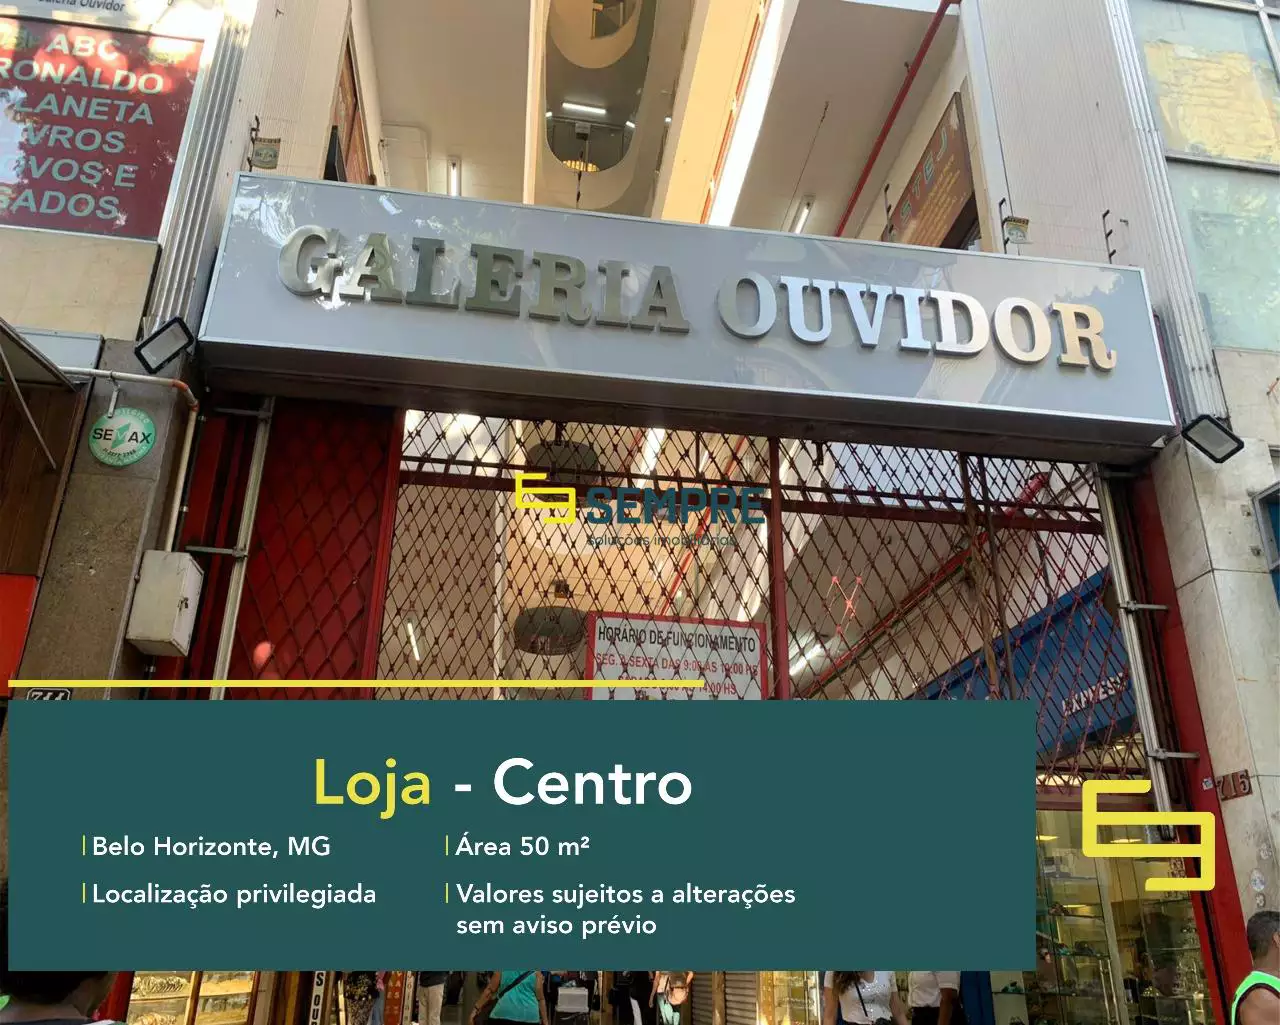 Loja na Galeria do Ouvidor para alugar em Belo Horizonte, em excelente localização. O ponto comercial conta com área de 50 m².